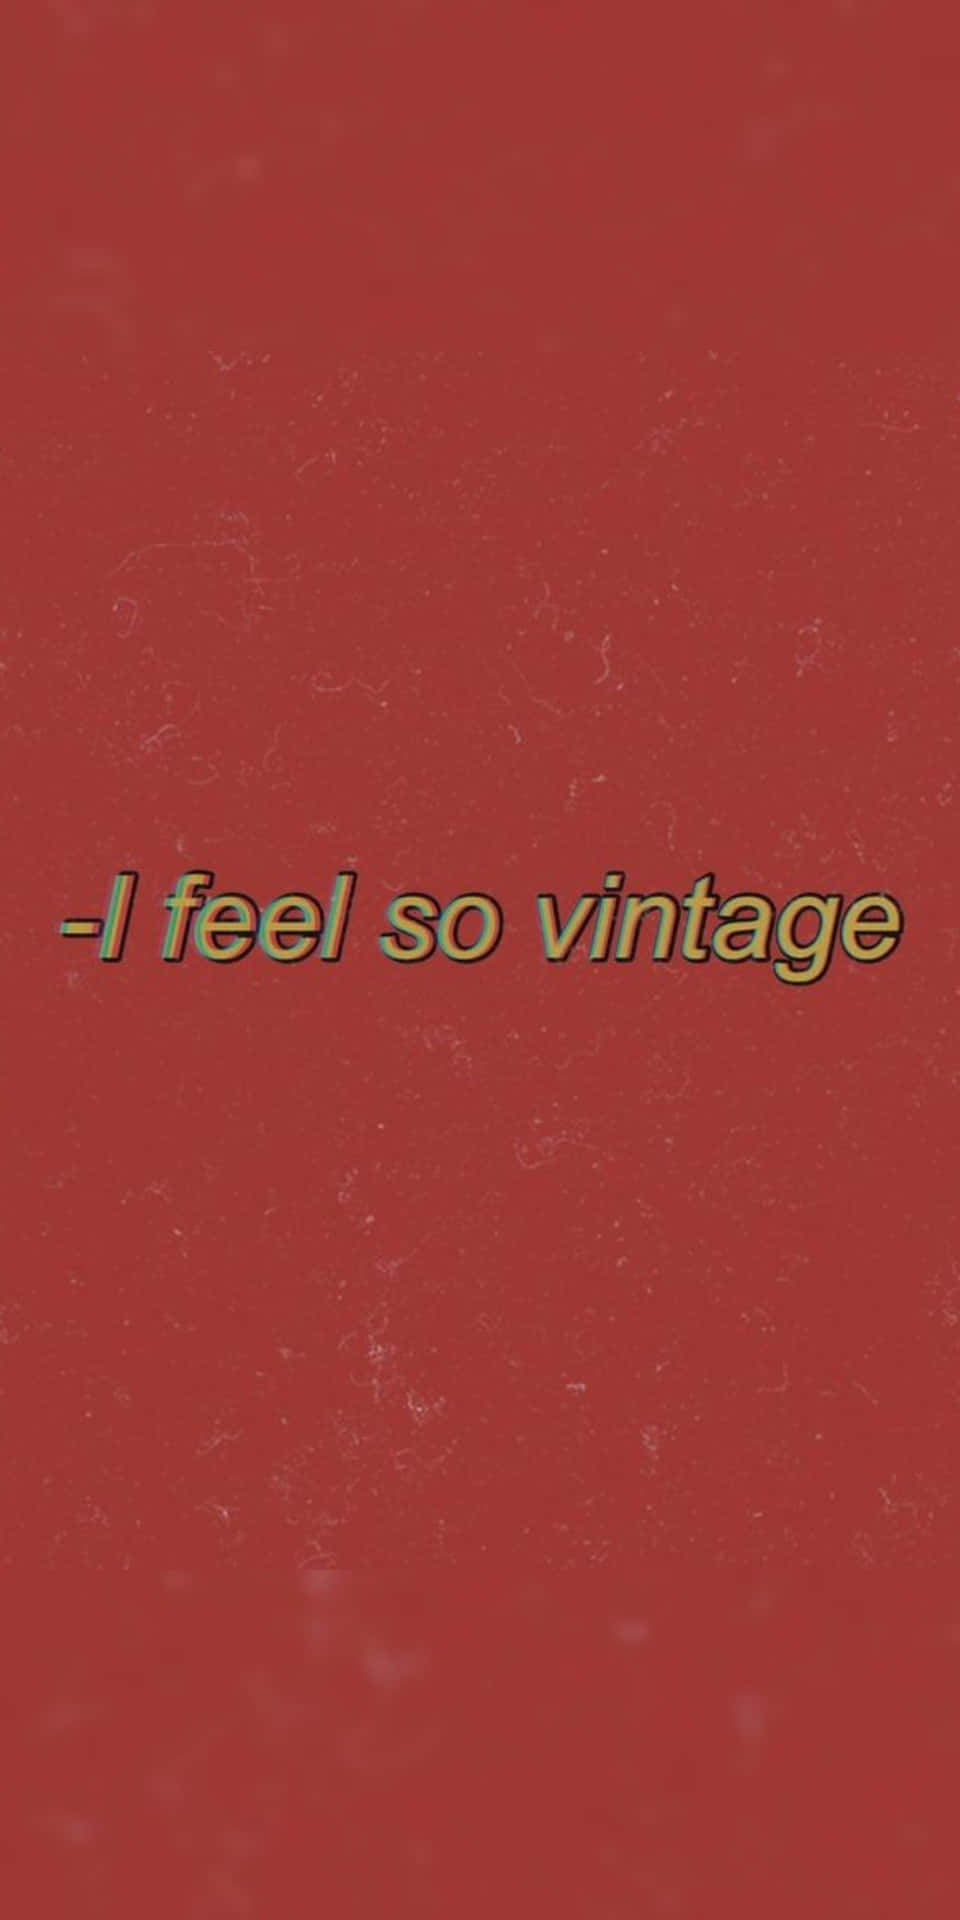 Red Aesthetic Tumblr I Feel So Vintage Wallpaper